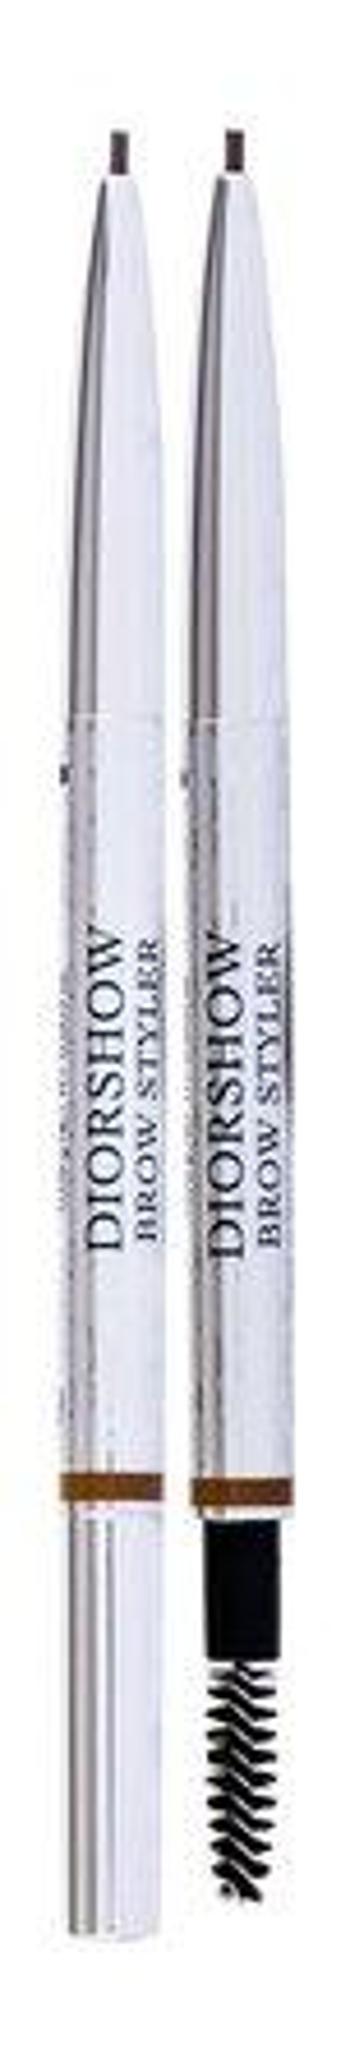 Dior Ultra-jemná tužka na obočí show Brow Styler (Ultra-Fine Precision Brow Pencil) 0,1 ml 021 Chestnut, 0,09ml